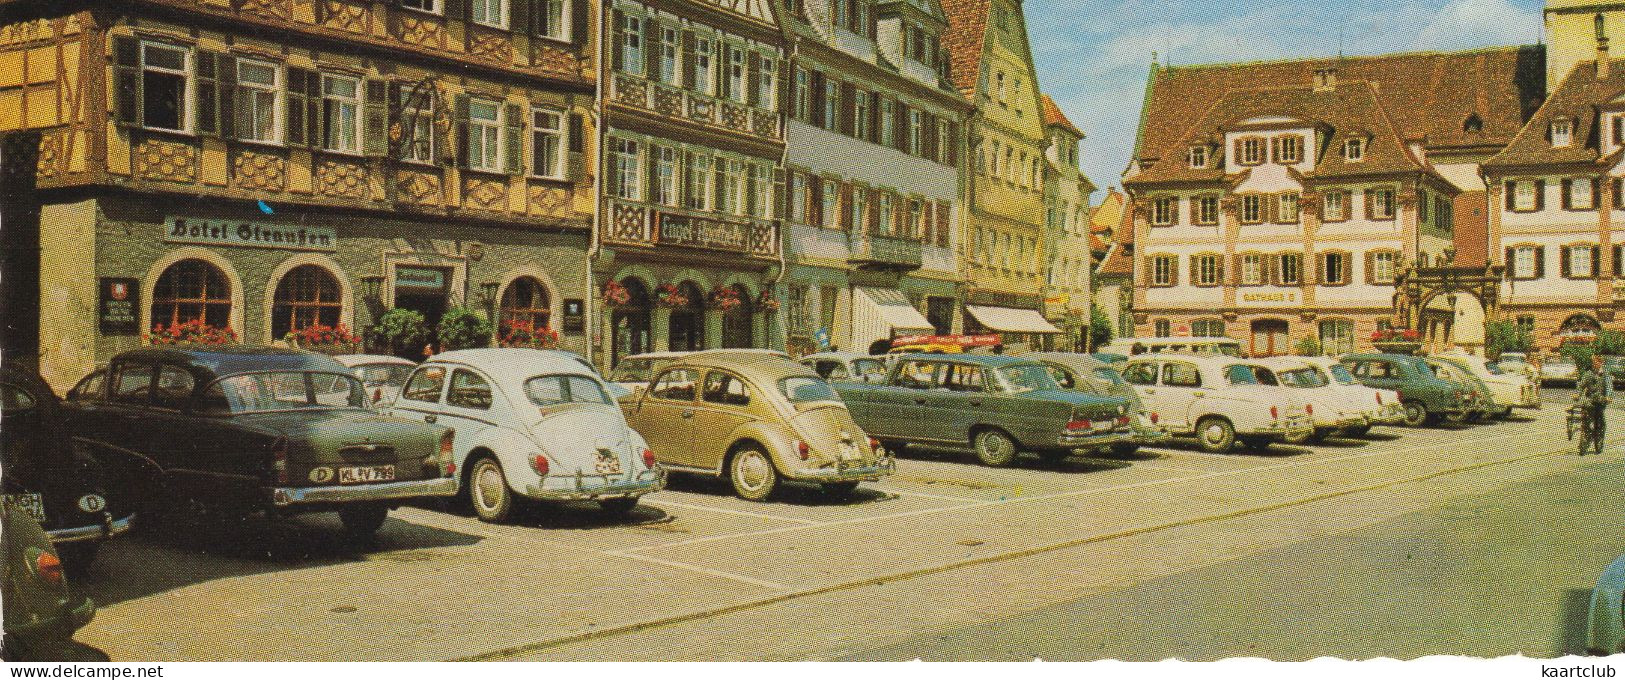 Bad Mergentheim: OPEL REKORD P1, VW 1200 KÄFER/COX, MERCEDES W111, W105, FORD TAUNUS 17M P3 - Marktplatz (Deutschland) - Passenger Cars